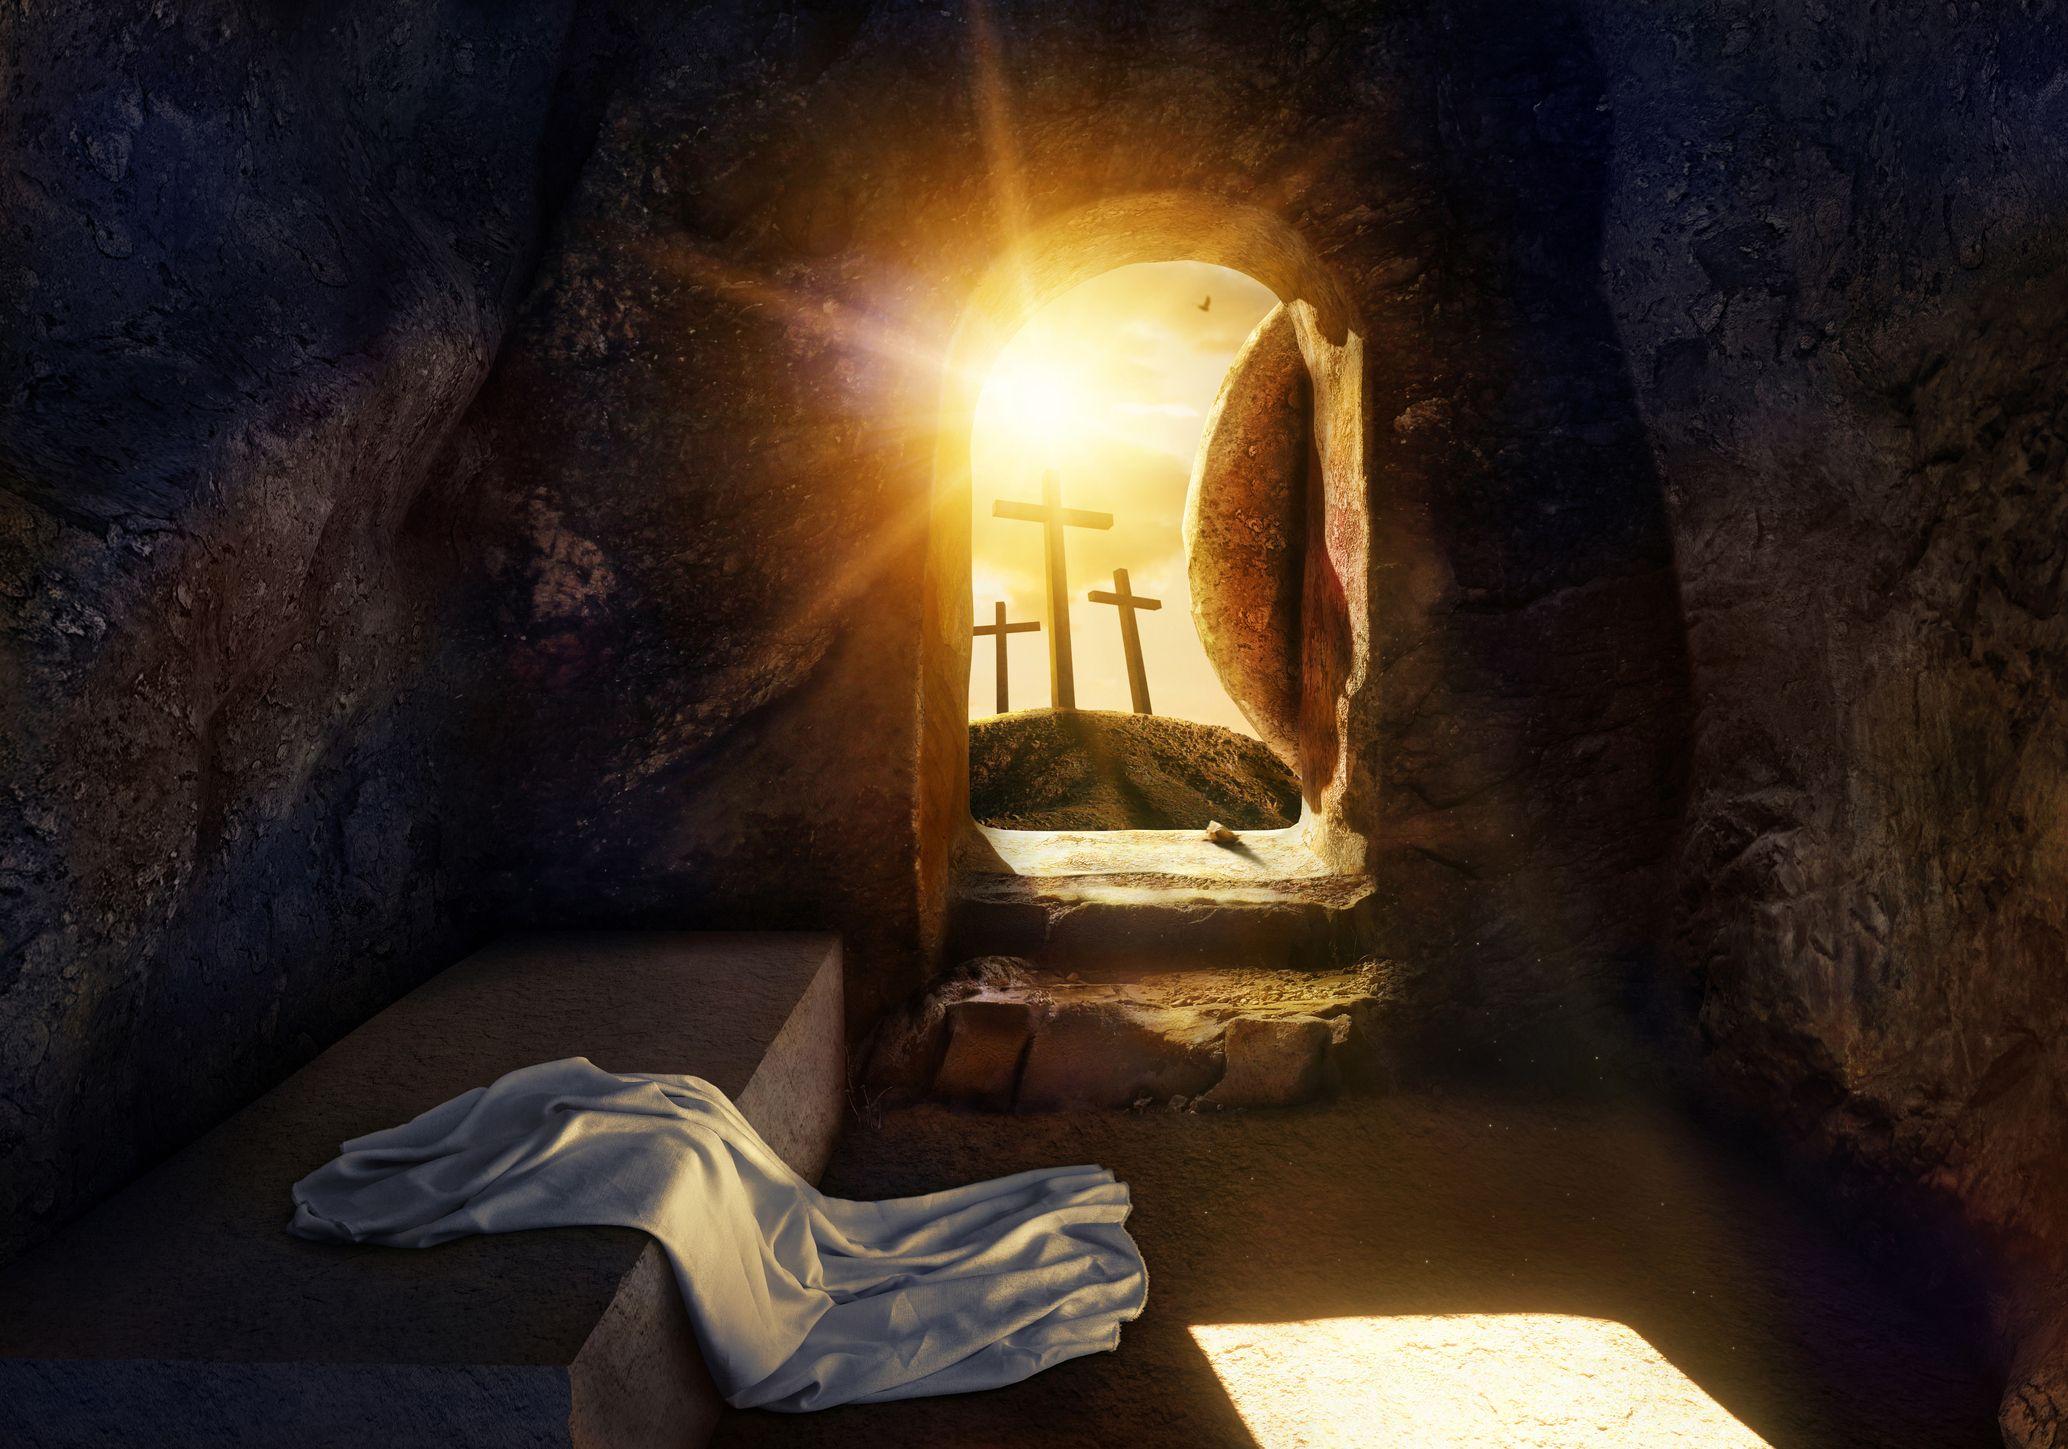 Jesus Empty Tomb Wallpapers - Top Free Jesus Empty Tomb Backgrounds ...